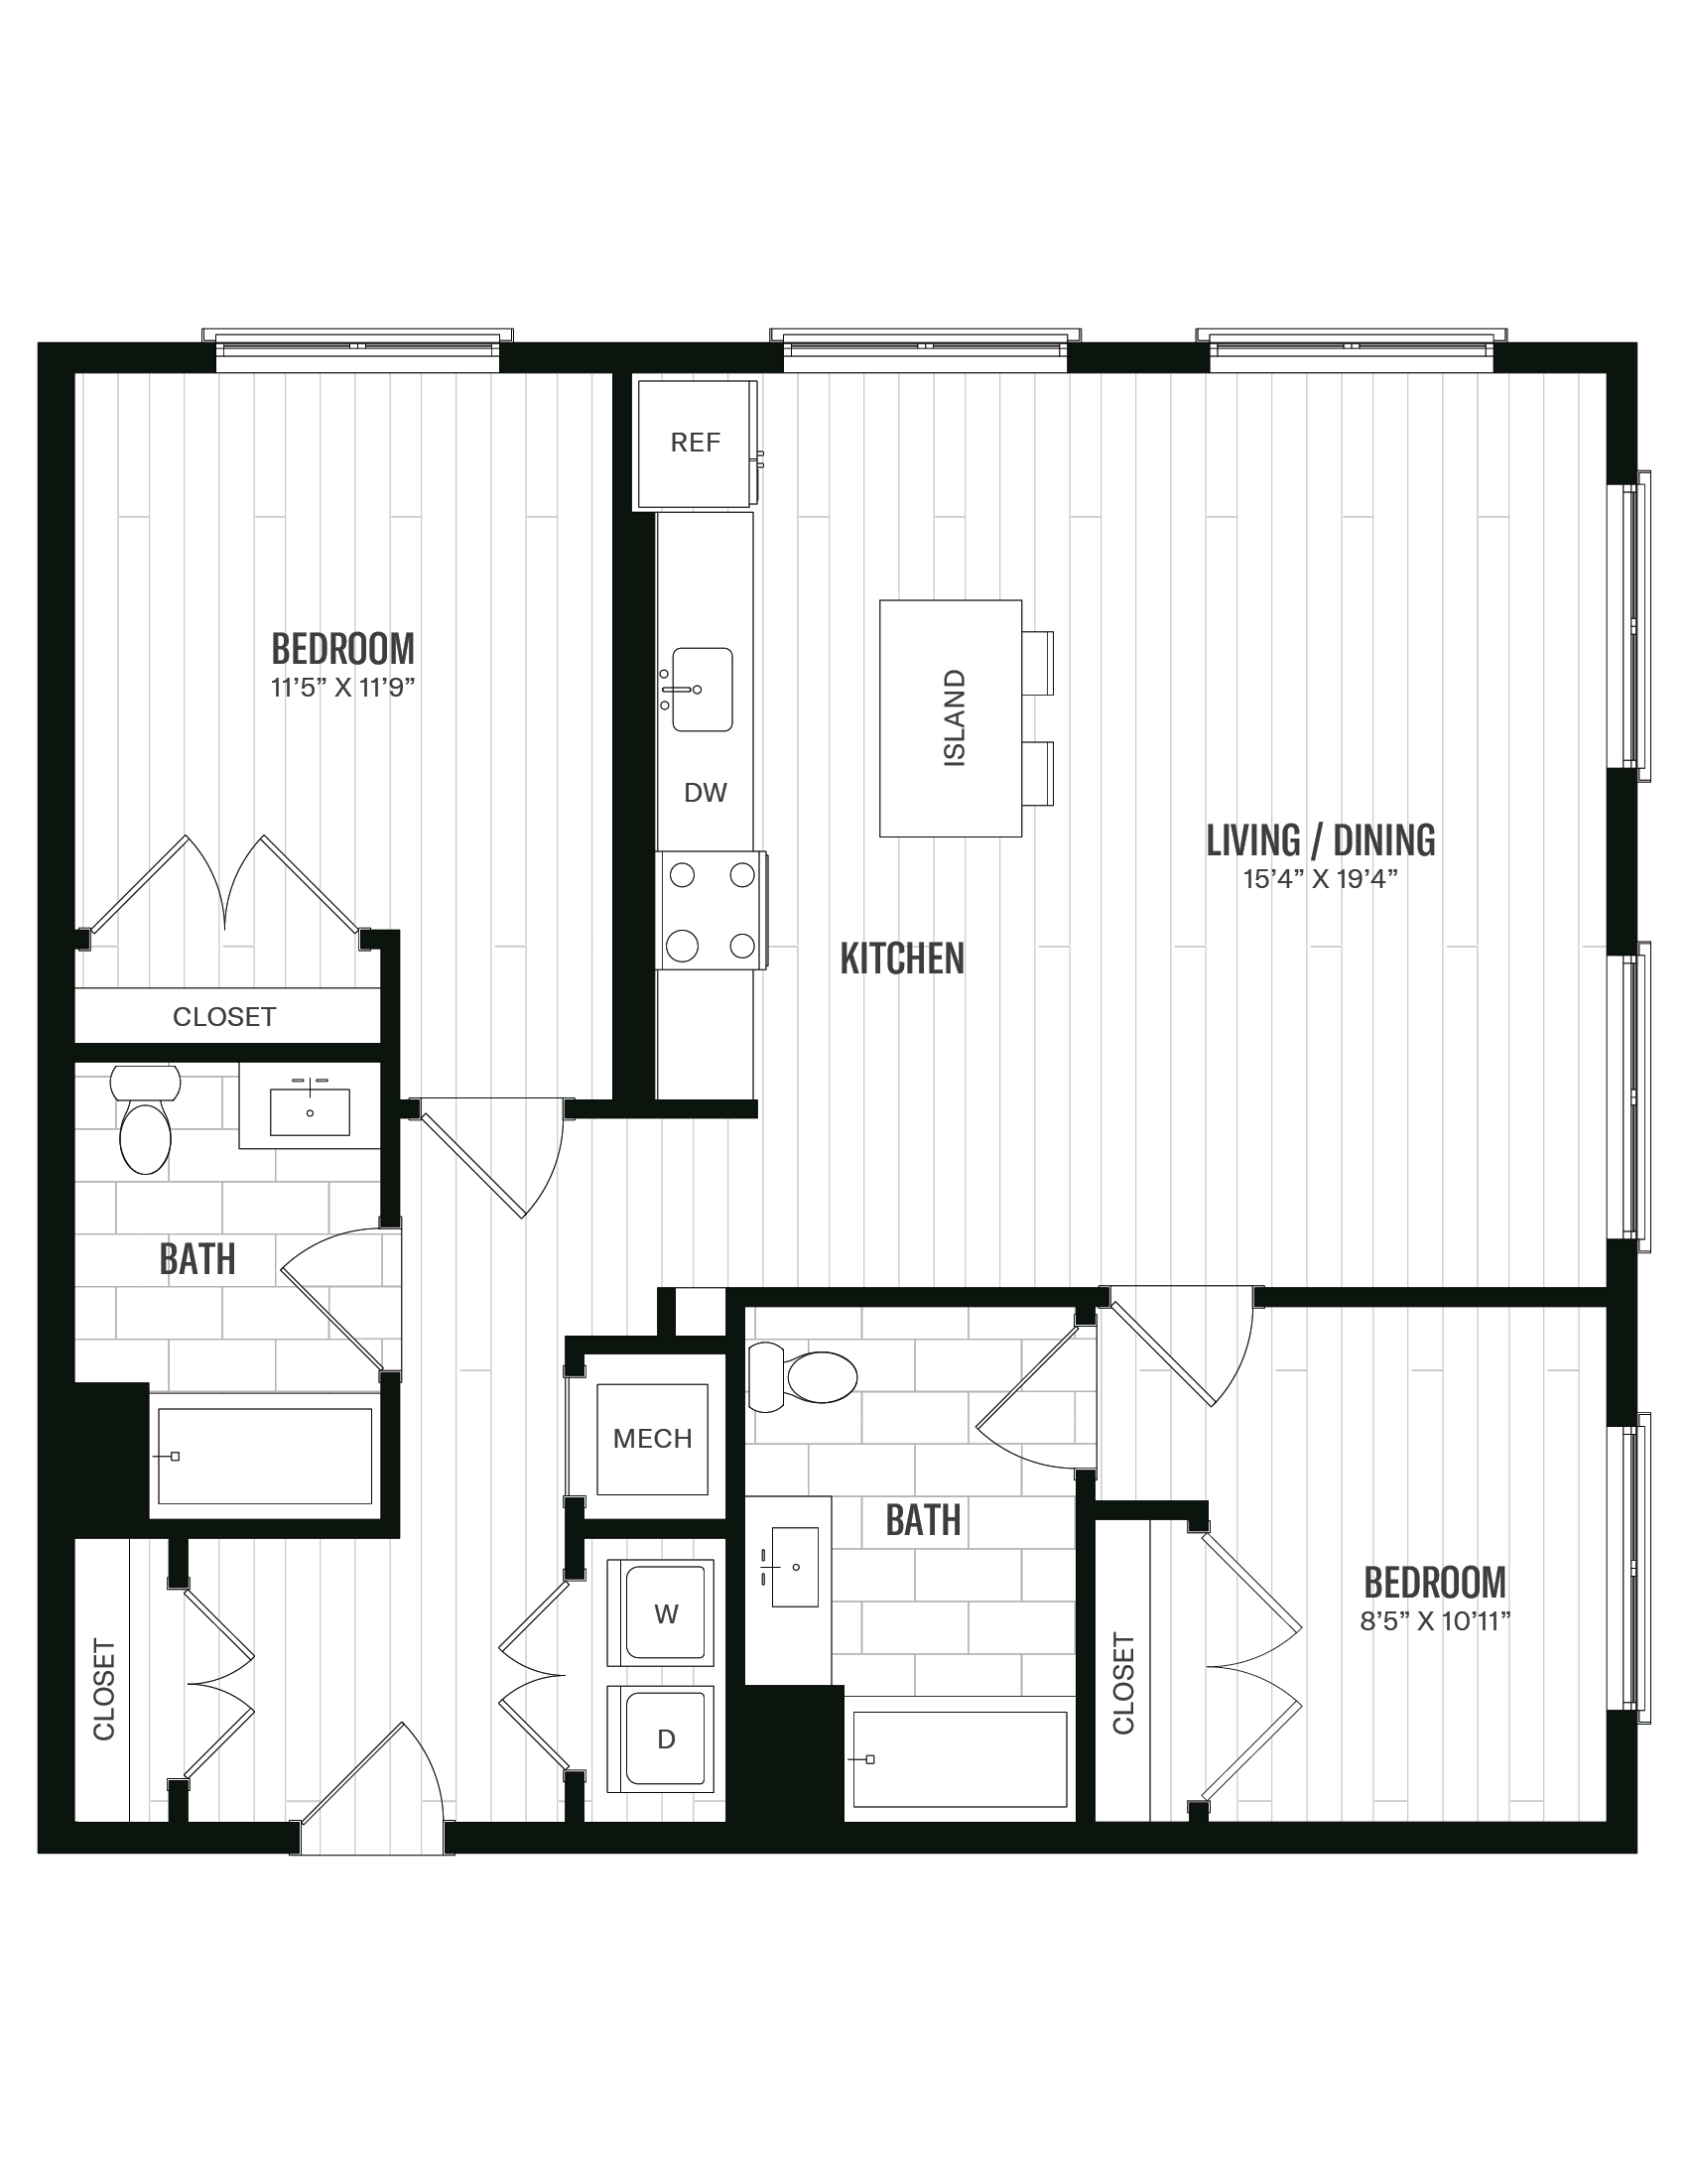 Floorplan image of unit 466